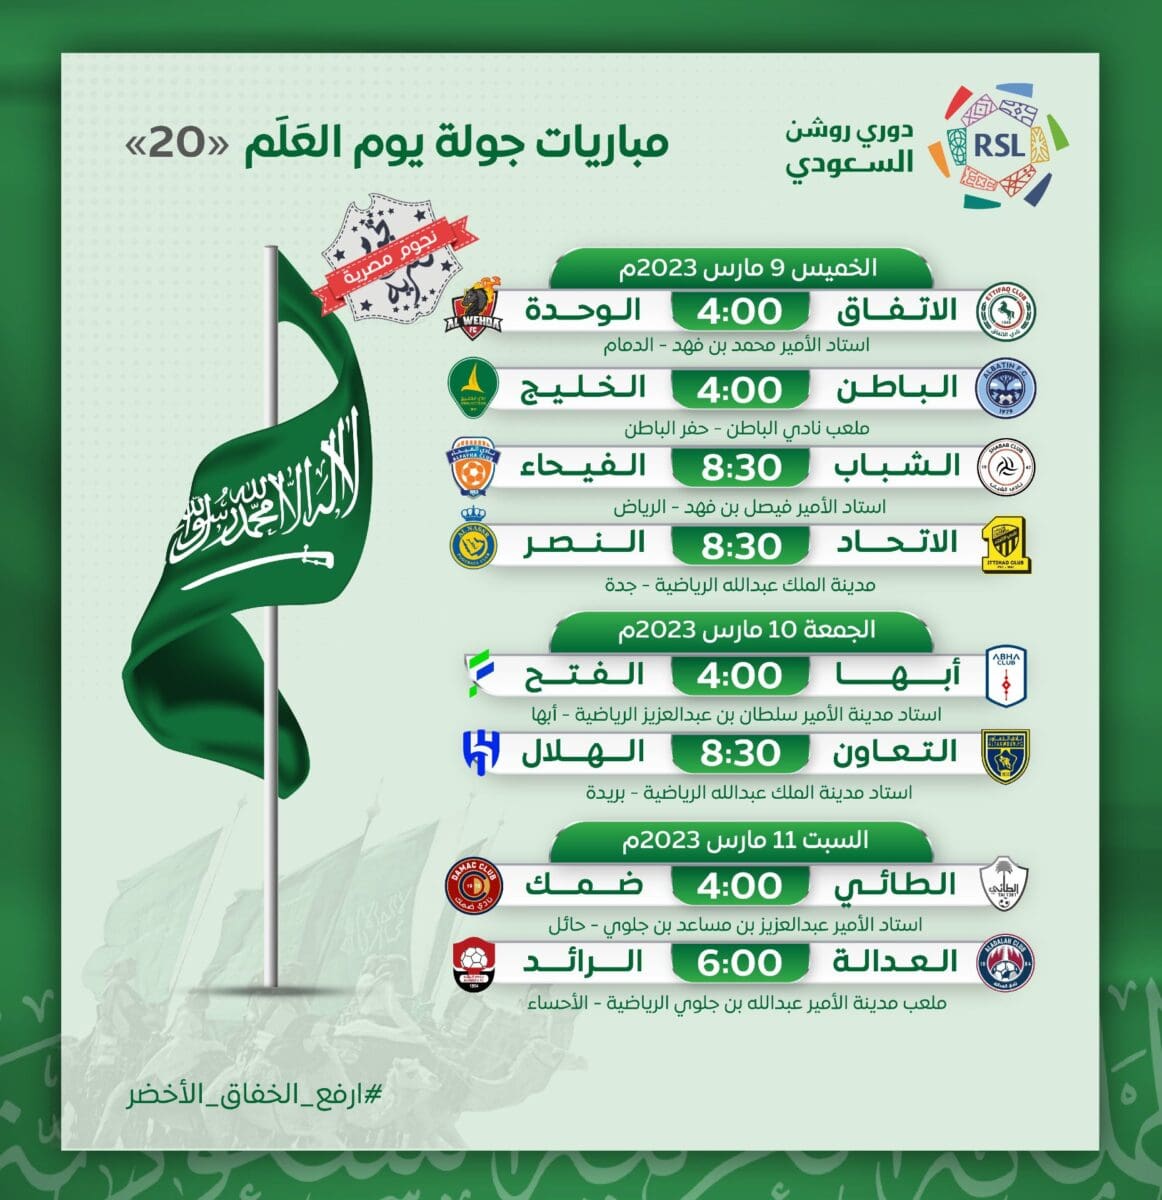 مباريات الجولة 20 (جولة يوم العلم السعودي) من دوري روشن للمحترفين